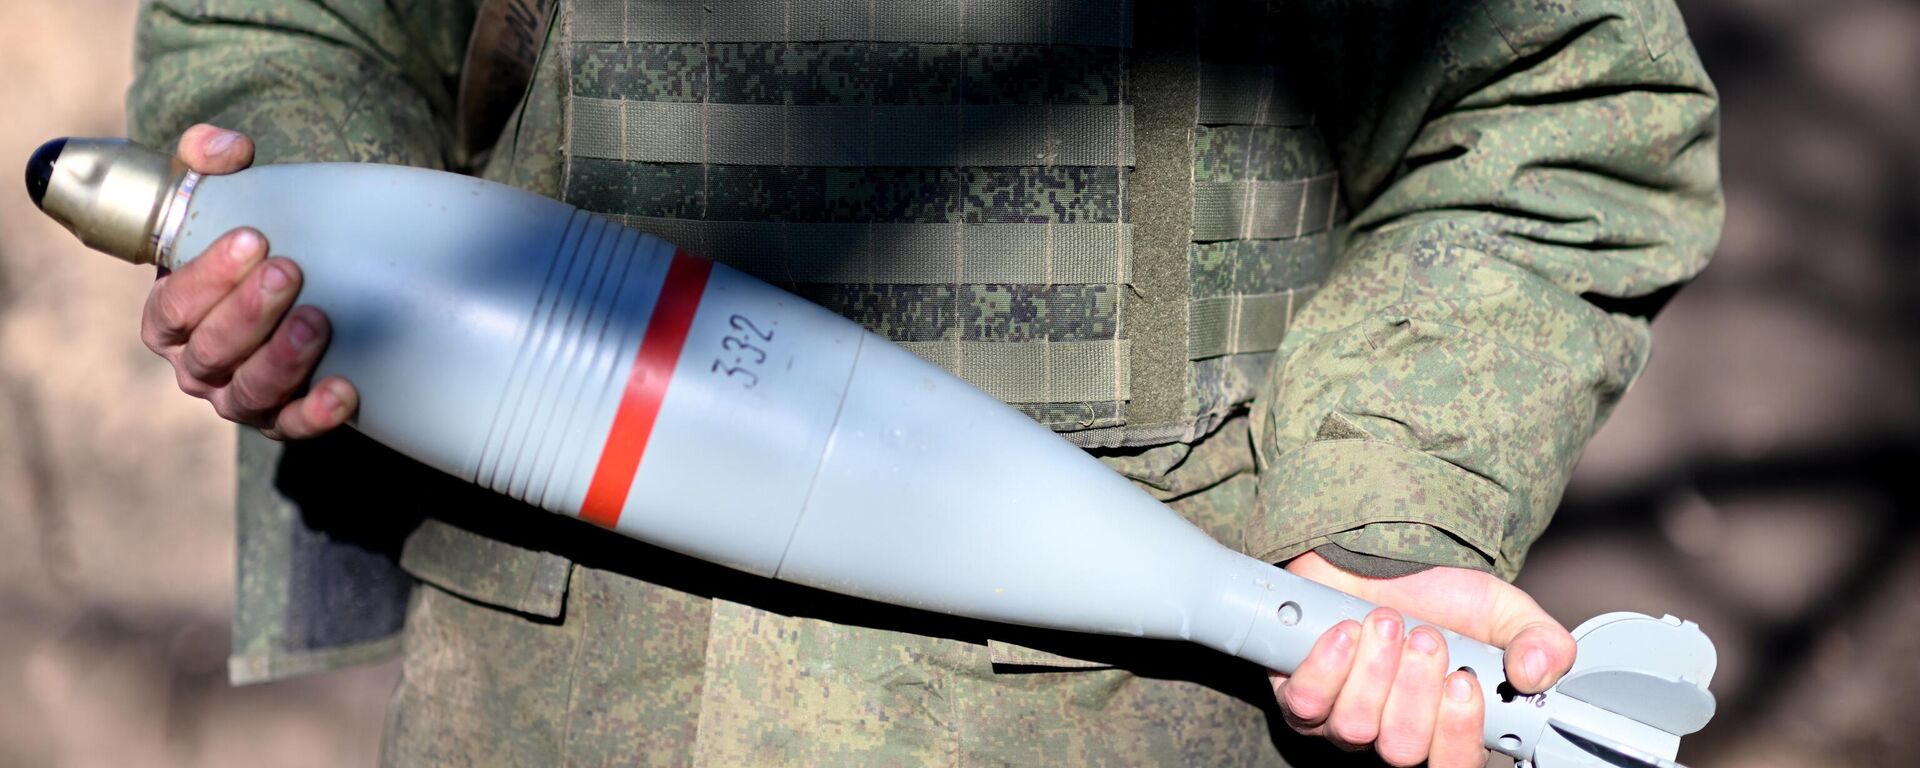 Снаряд для миномета 2Б11 Сани в руках военнослужащего ВС РФ в зоне спецоперации - Sputnik Латвия, 1920, 14.02.2023